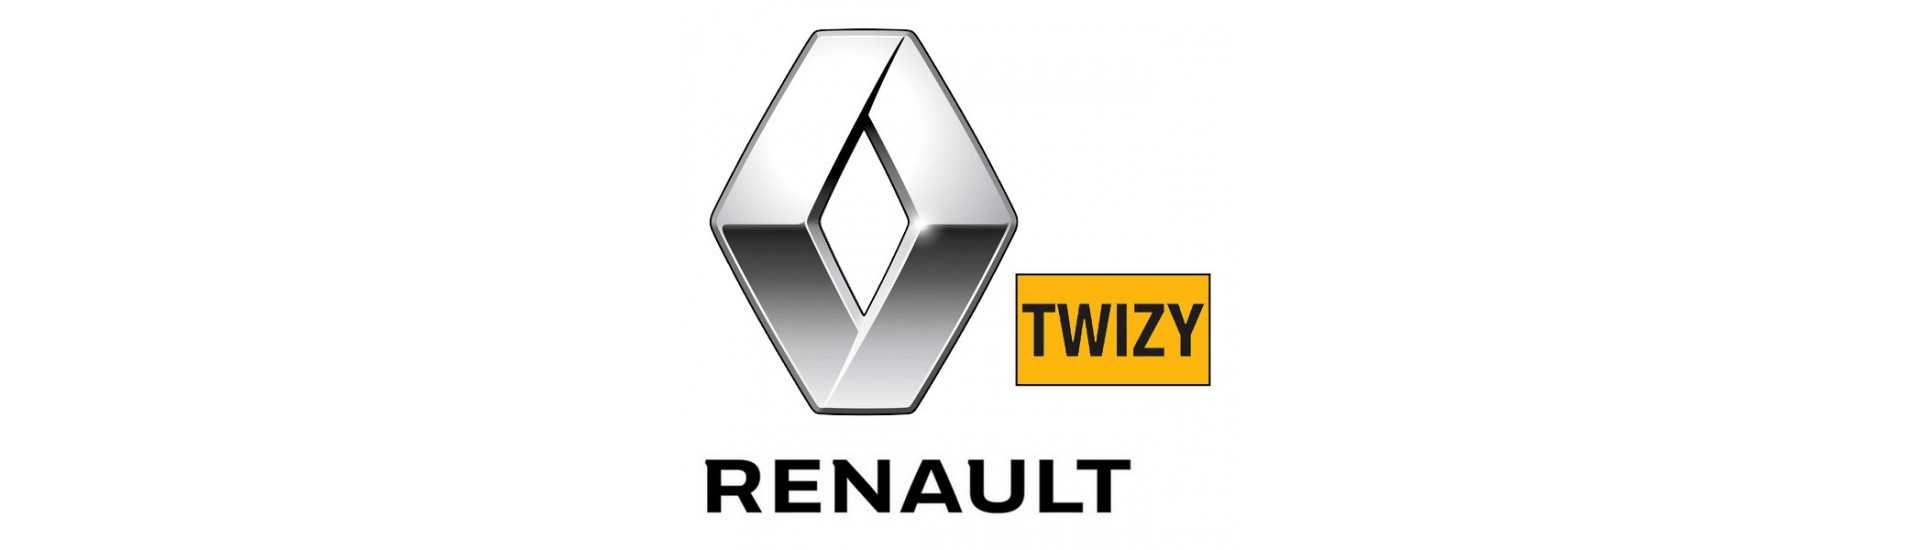 Breaking pare seal till bästa prisbil utan tillstånd Renault Twizy